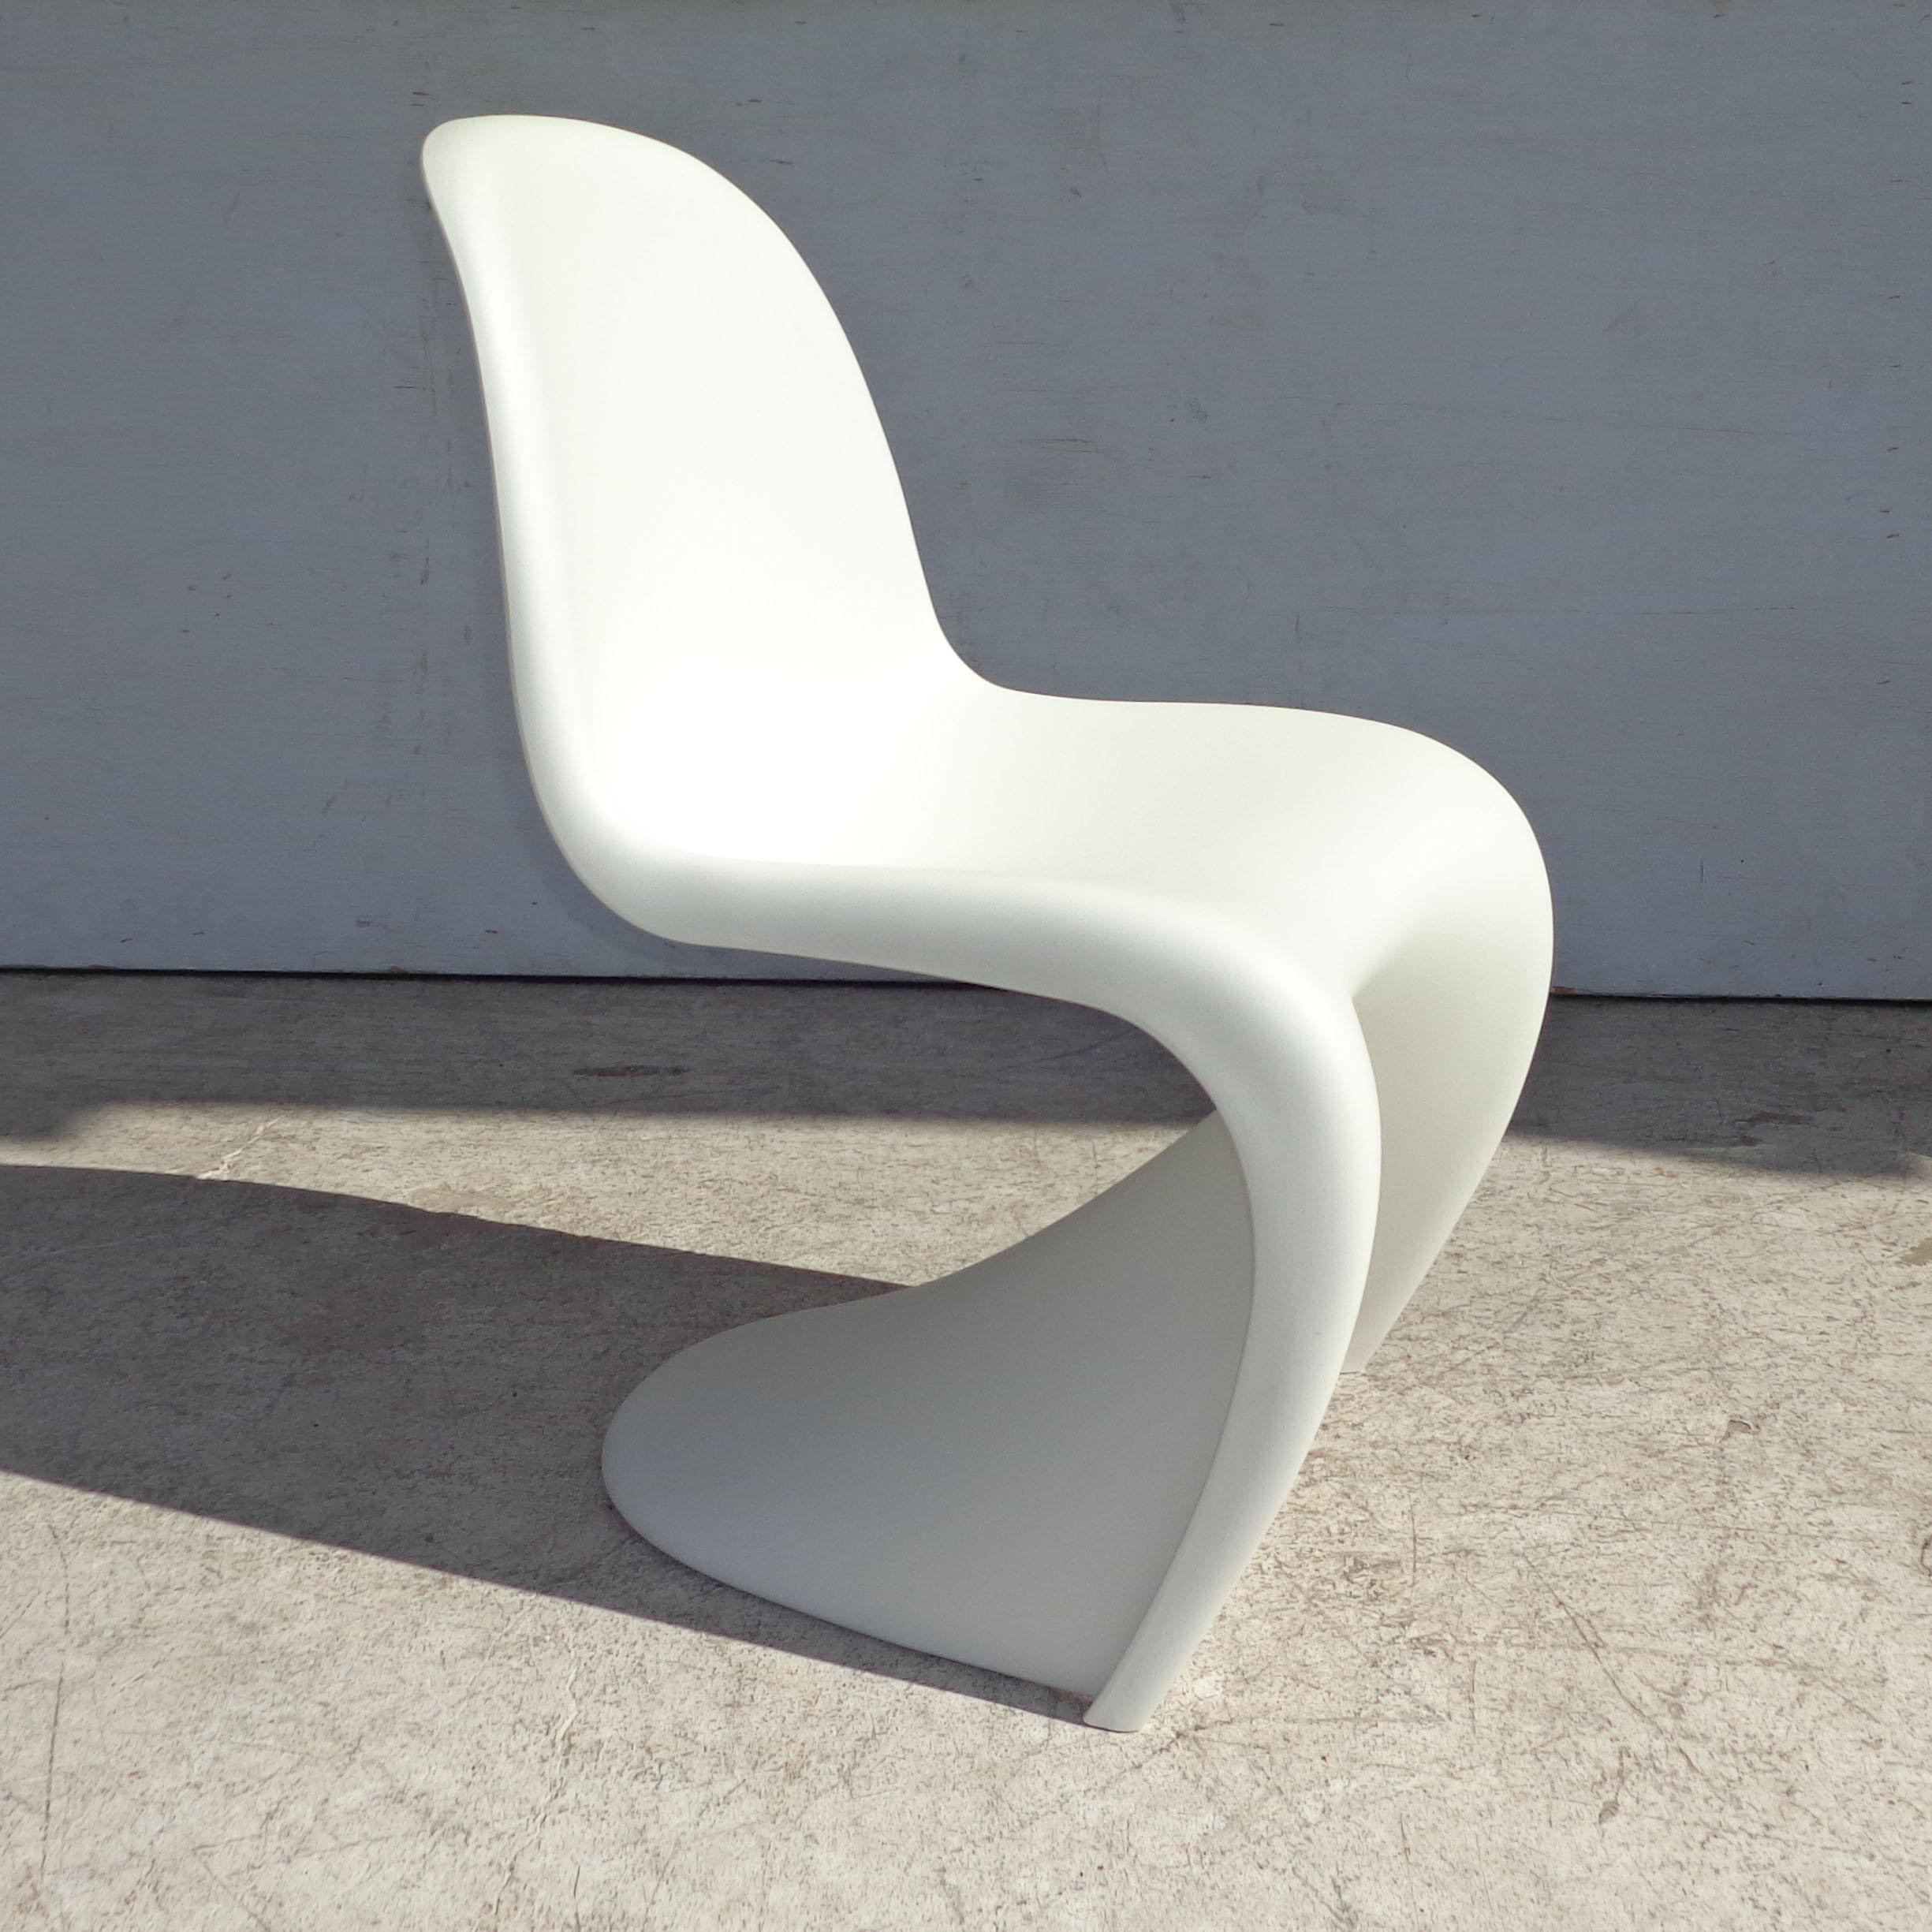 Weißer Panton-Stuhl von Verner Panton für Vitra mit Beistellhocker

Der dänische Designer Verner Panton war fasziniert von den Möglichkeiten des Kunststoffs und entwarf den ersten spritzgegossenen Stuhl, der 1967 von Vitra für Herman Miller